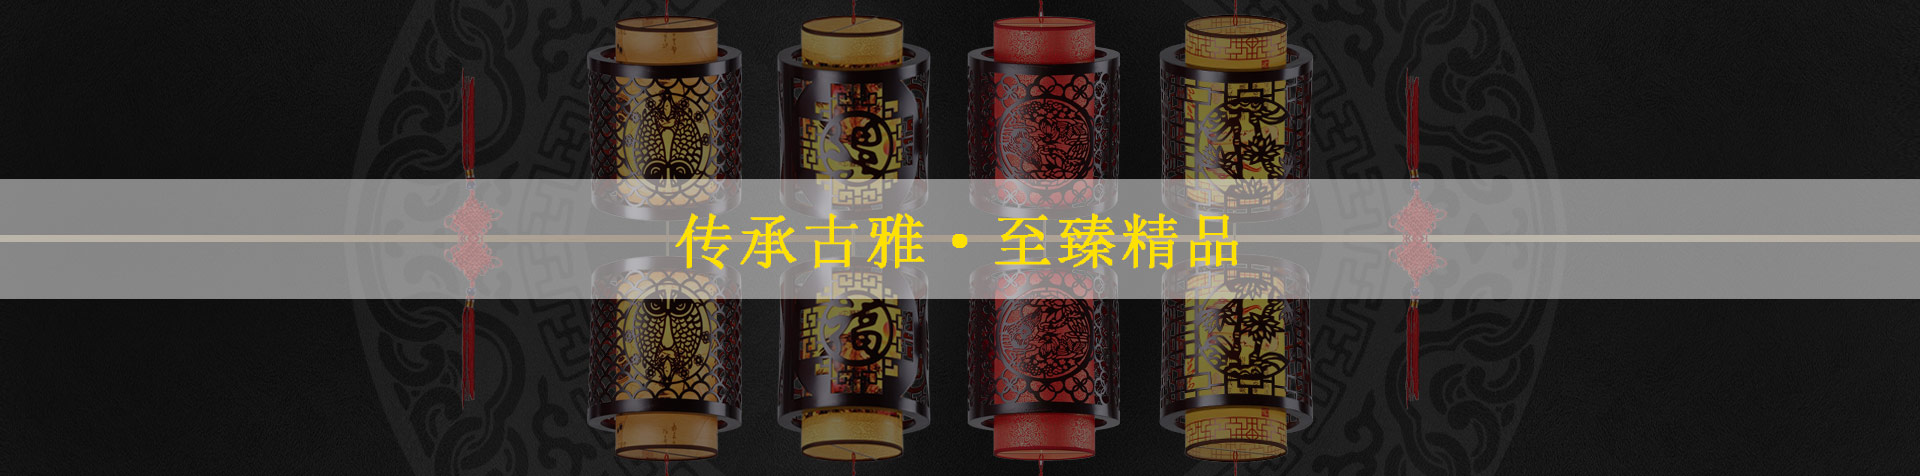 中式古典茶樓吊燈演繹東方魅力 